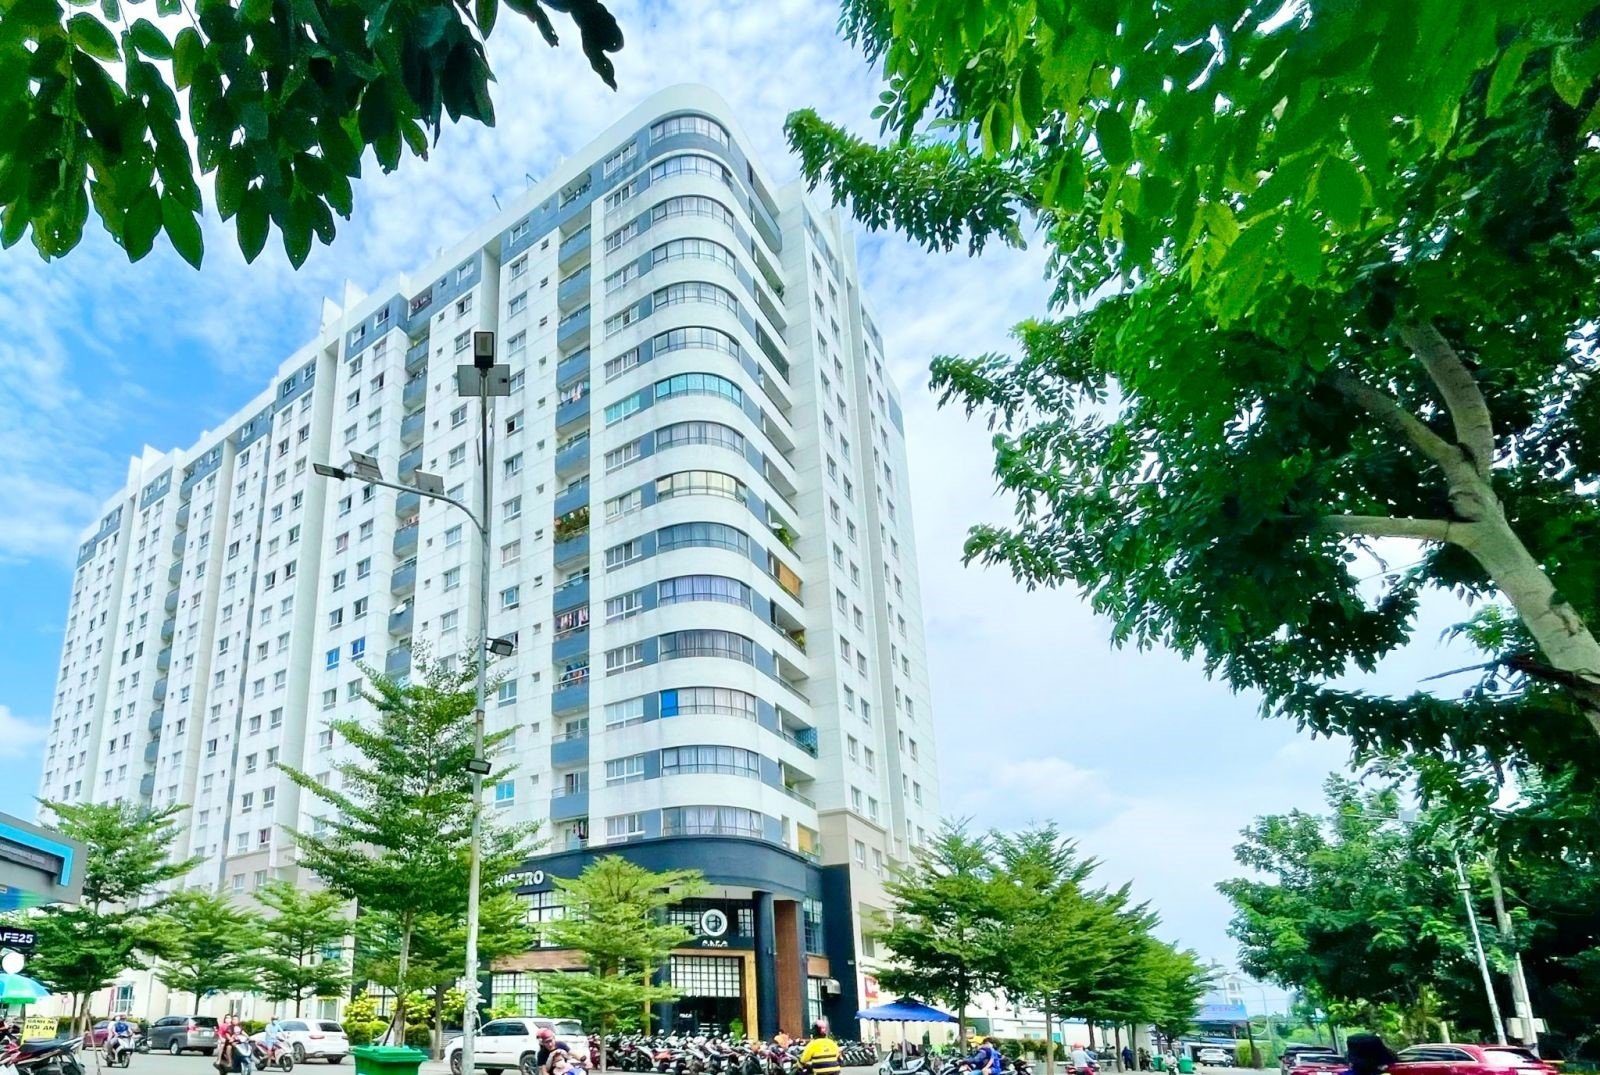 co-du-cho-dau-oto-va-xe-may-chung-cu-dream-home-residence-quan-go-vap-khong-onehousing-1